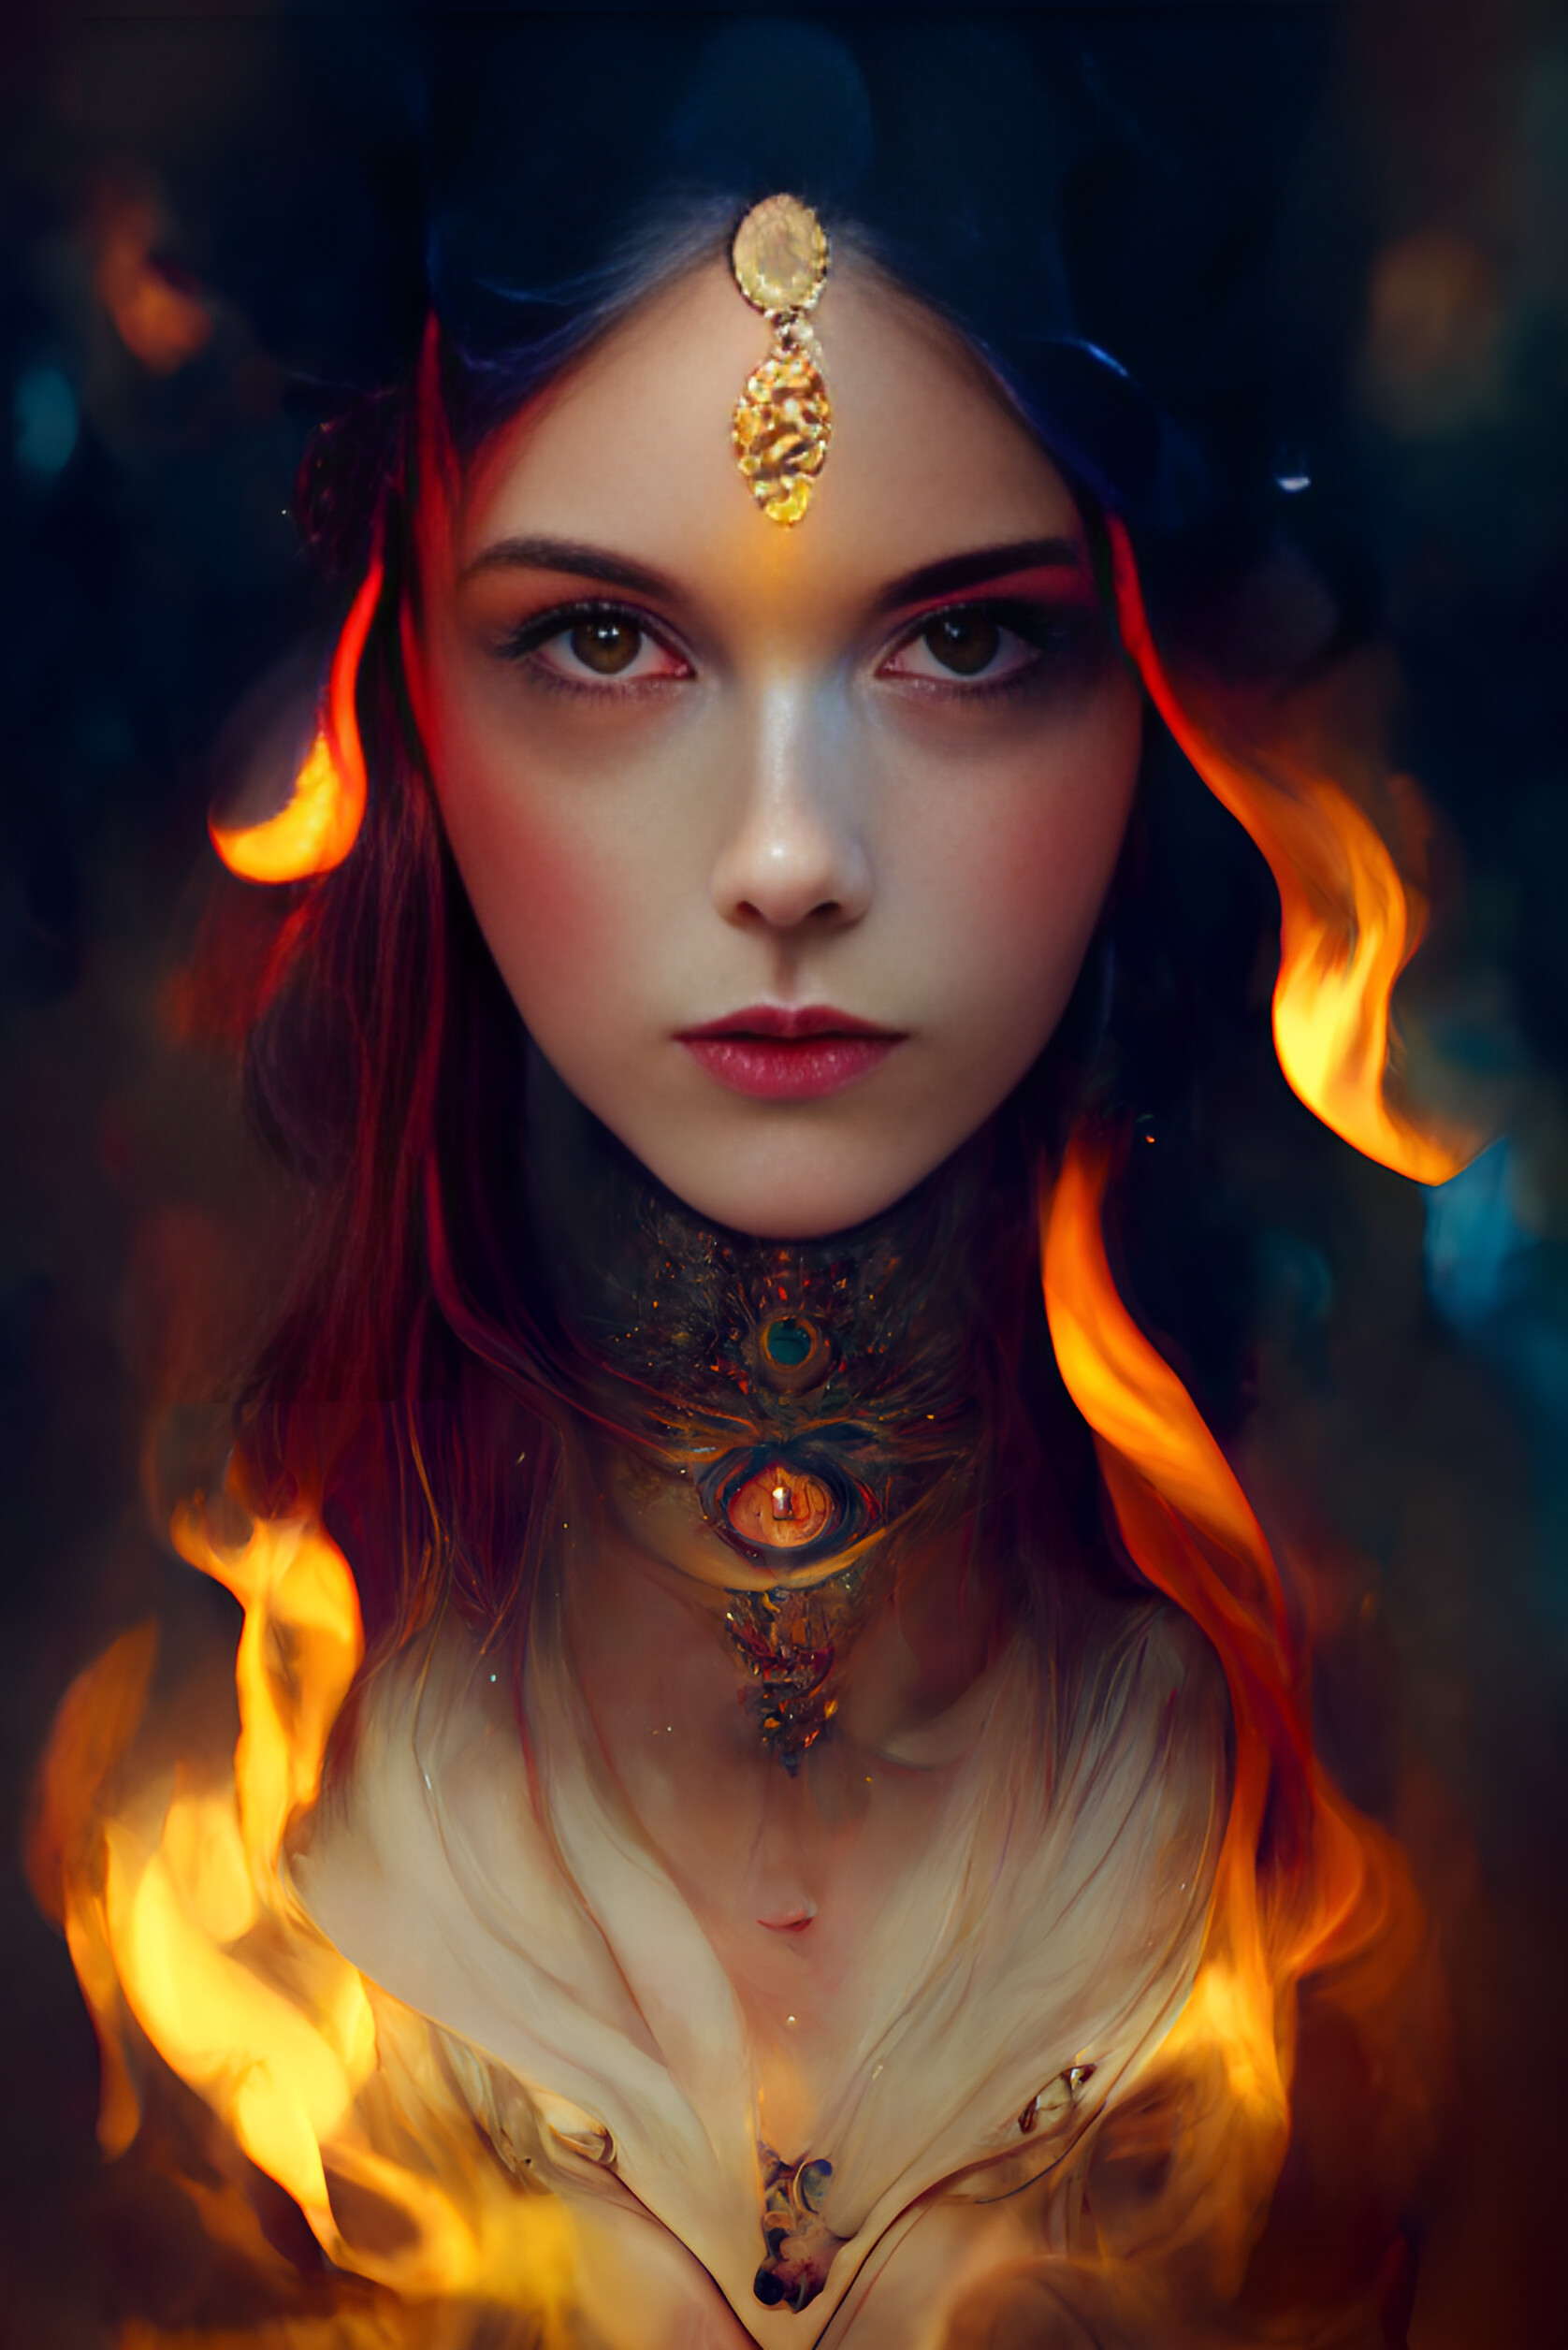 ArtStation - Portrait of a Lady on Fire